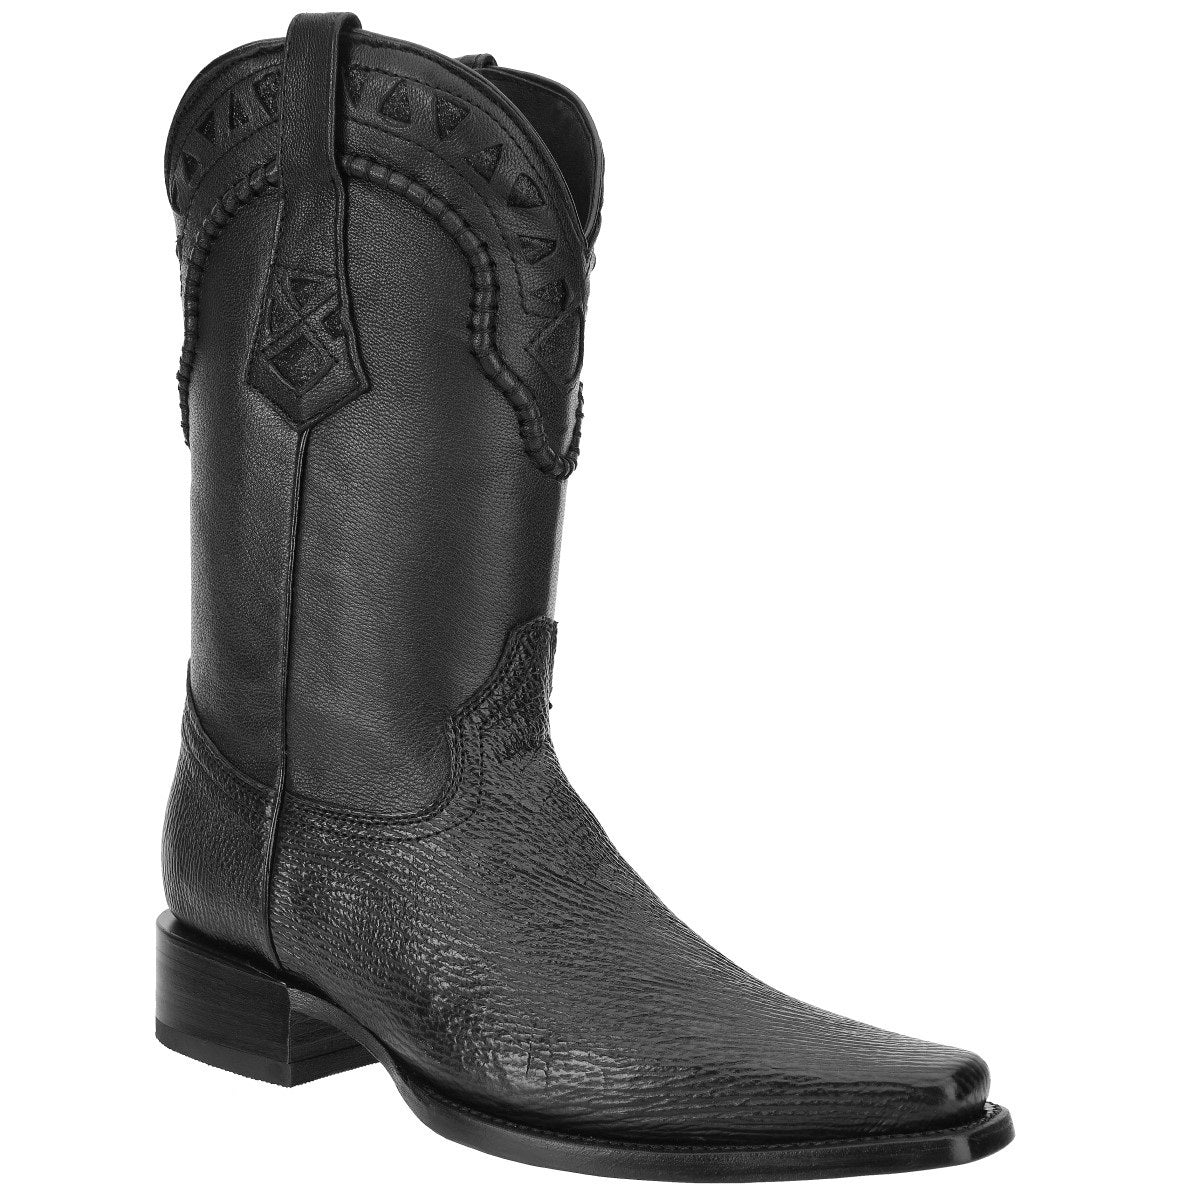 Botas Vaqueras TM-WD0198 - Western Boots